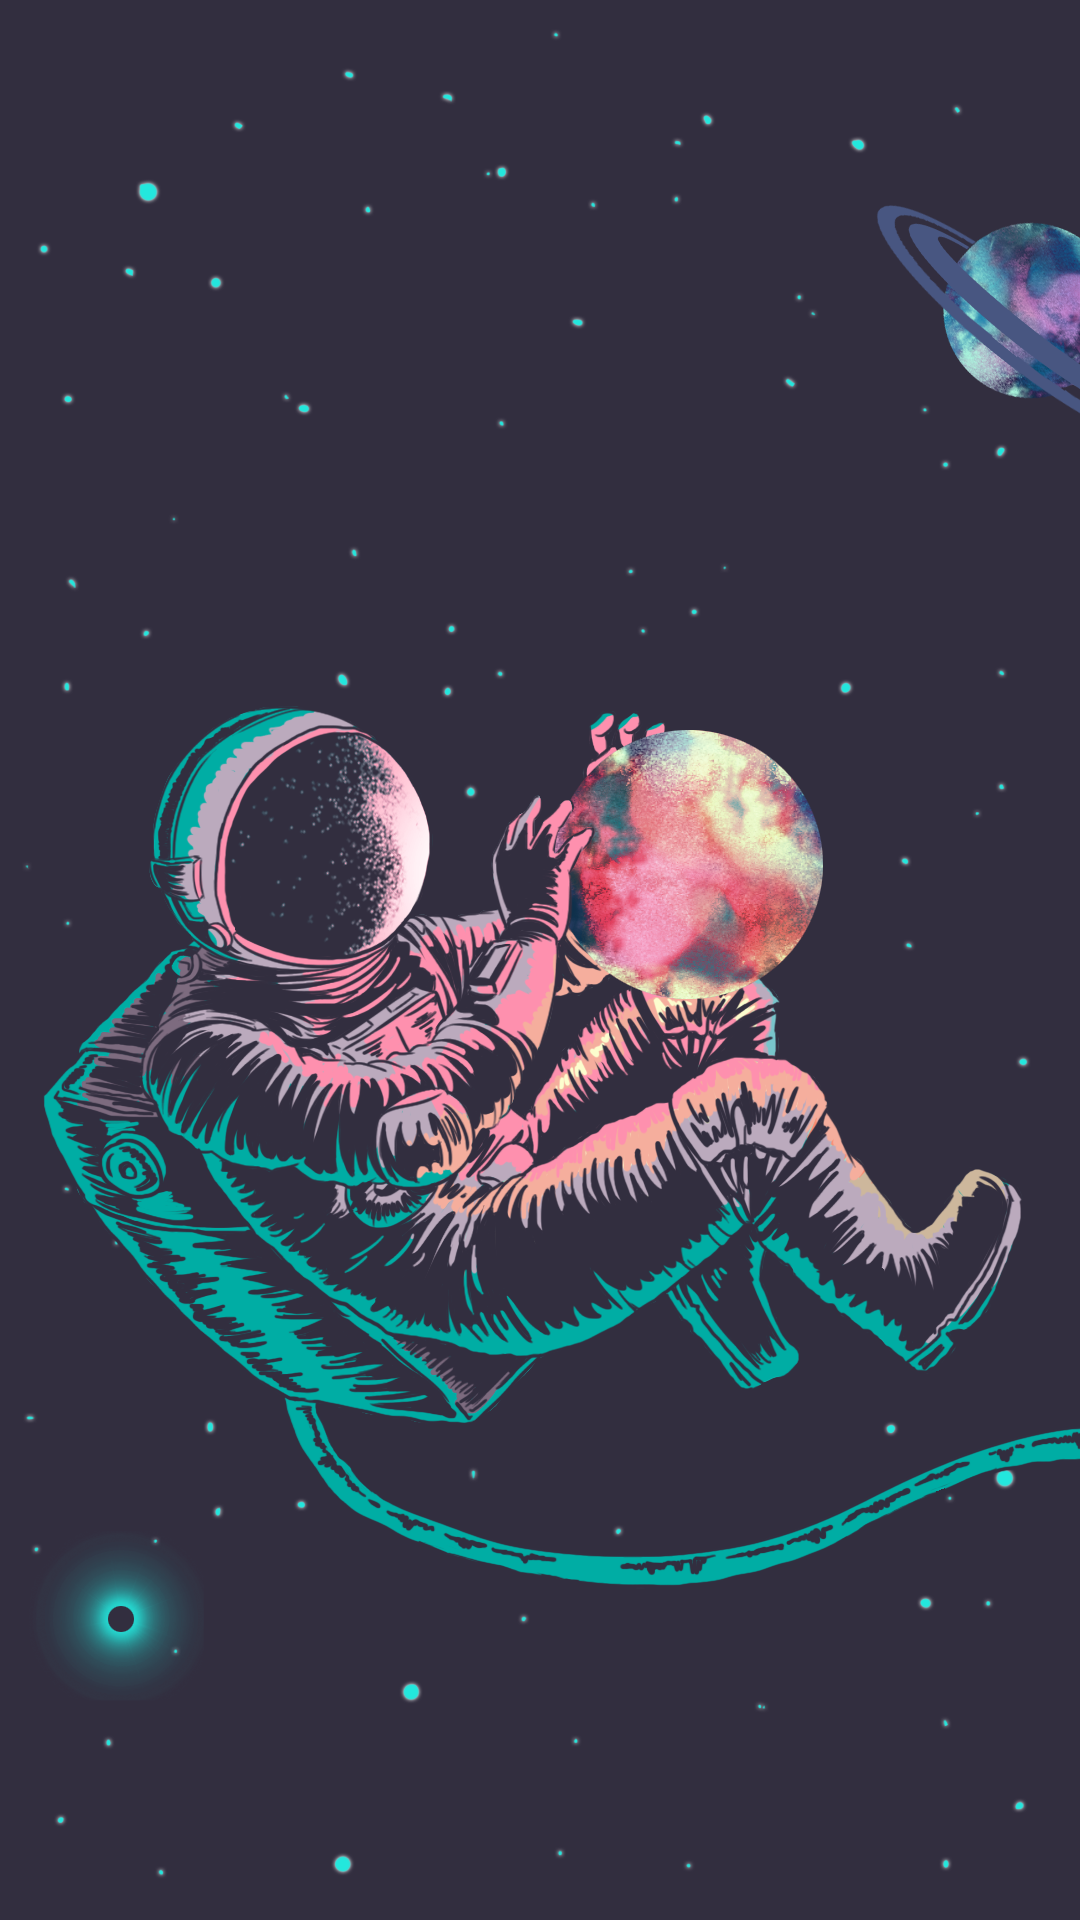 Wallpaper Astronaut Galaxy by Gocase. Astronaut wallpaper